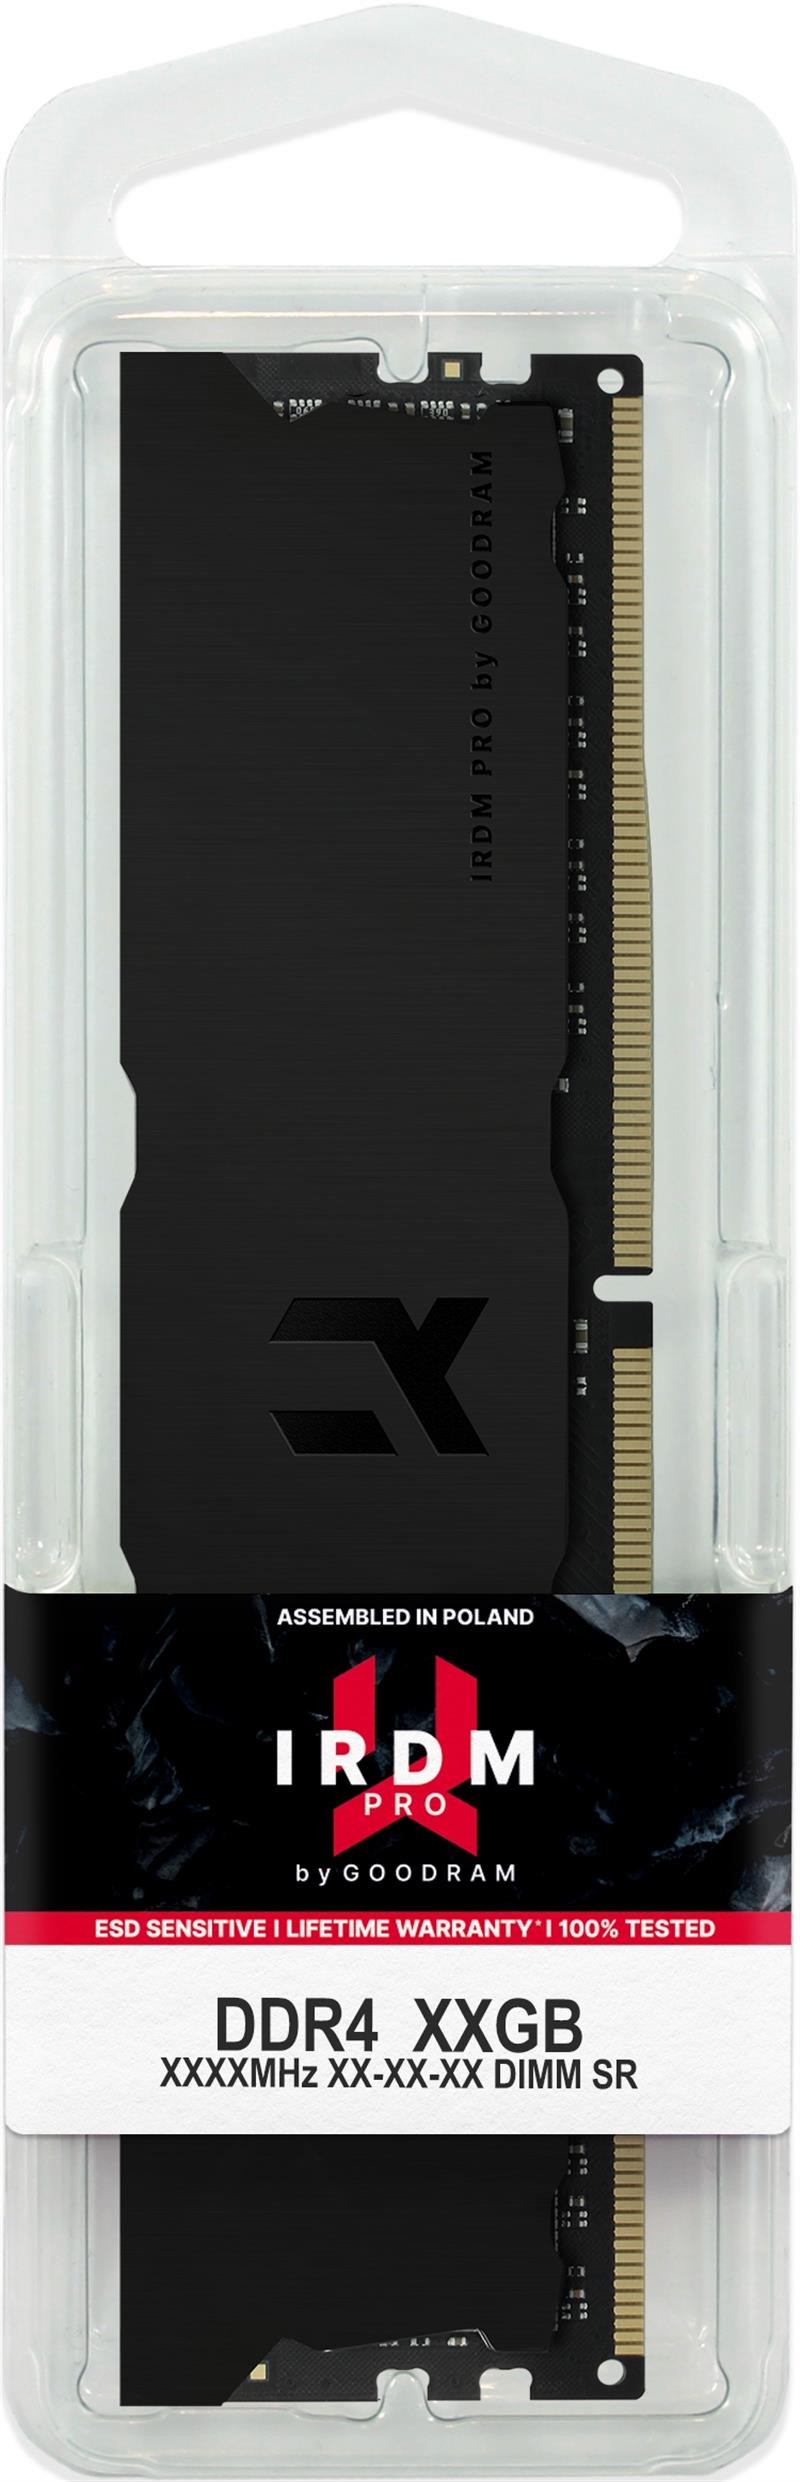 GOODRAM 2x8GB IRDM PRO DDR4 DEEP BLACK Dual Channel kit 3600MHz CL18 SR DIMM - DEEP BLACK -